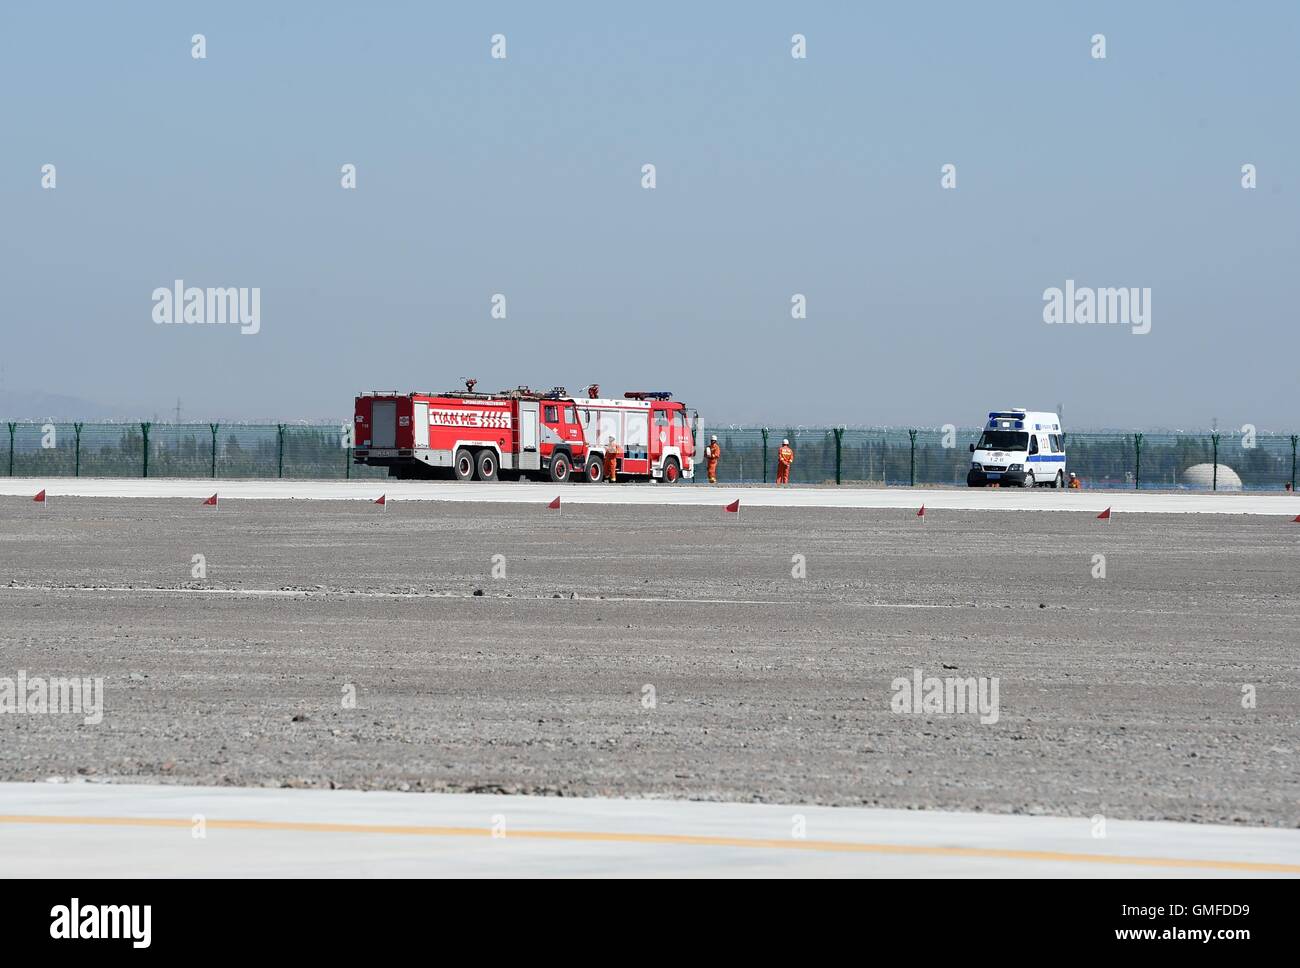 Zhangye, la province de Gansu. Août 27, 2016. Les camions de pompiers et une ambulance sont vus sur le site de l'accident après une chute d'avion acrobatique au sol au cours de la 1ère route de la soie de l'Aviation générale internationale Convention à Zhangye, nord-ouest de la Chine, la province de Gansu, le 27 août, 2016. Le pilote de l'avion acrobatique a été tué. Ventilateur/Peishen Crédit : Xinhua/Alamy Live News Banque D'Images